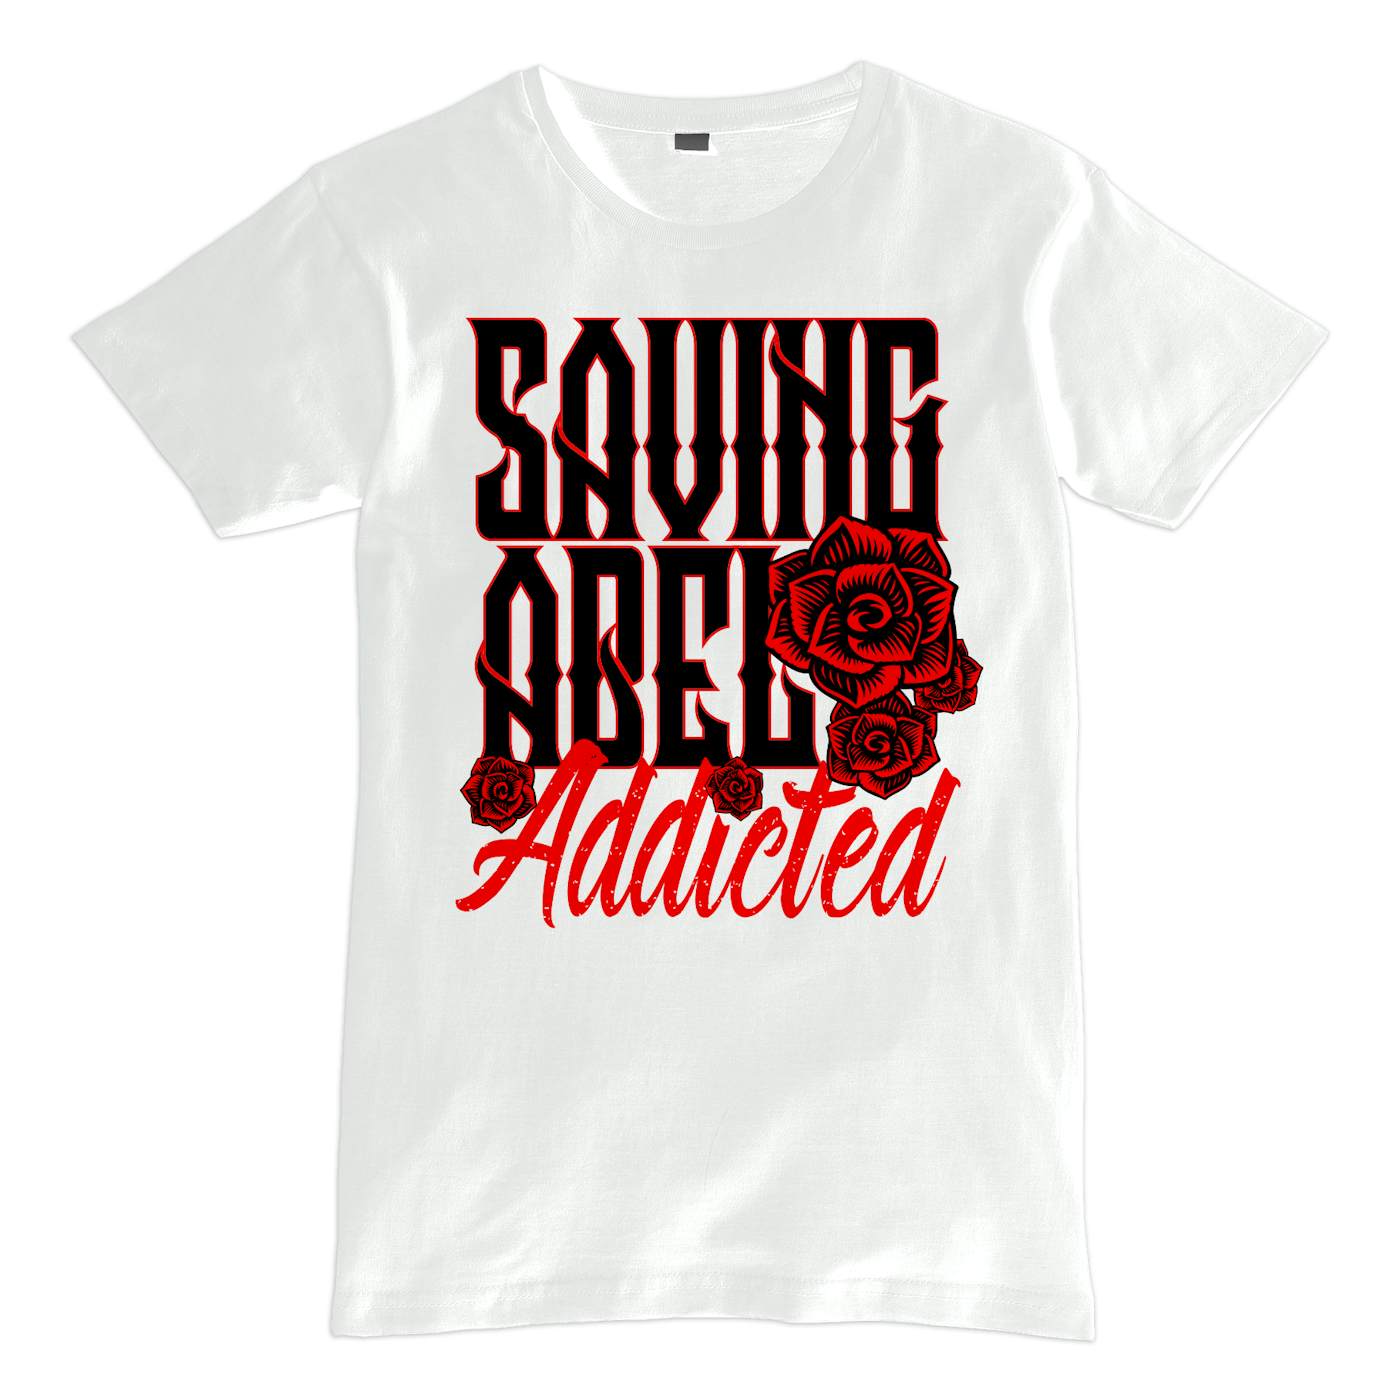 Saving Abel Addicted Rose Shirt